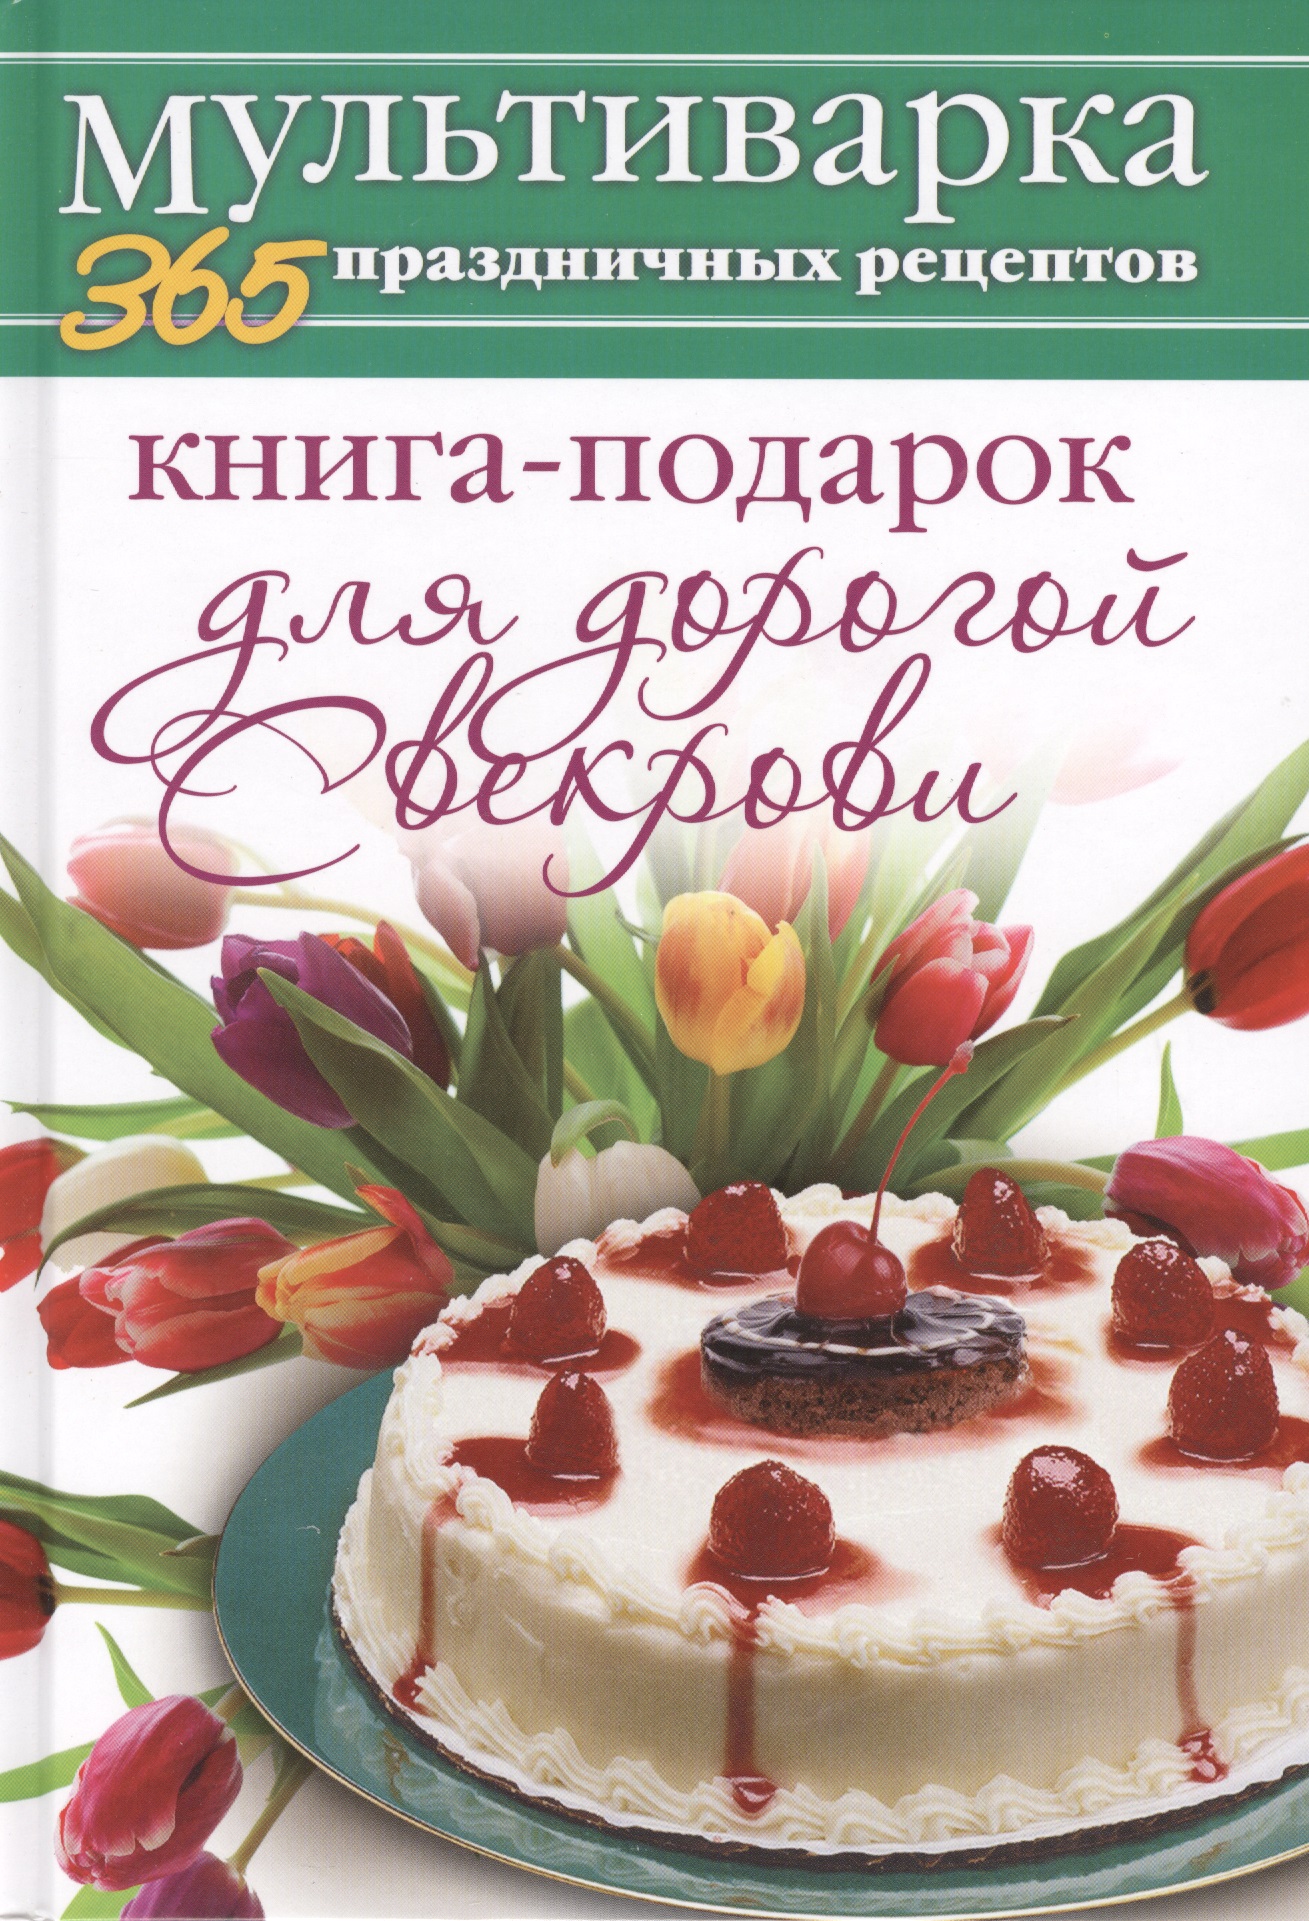 Гаврилова Анна Сергеевна Книга-подарок для дорогой Свекрови гаврилова а книга подарок для классной подружки